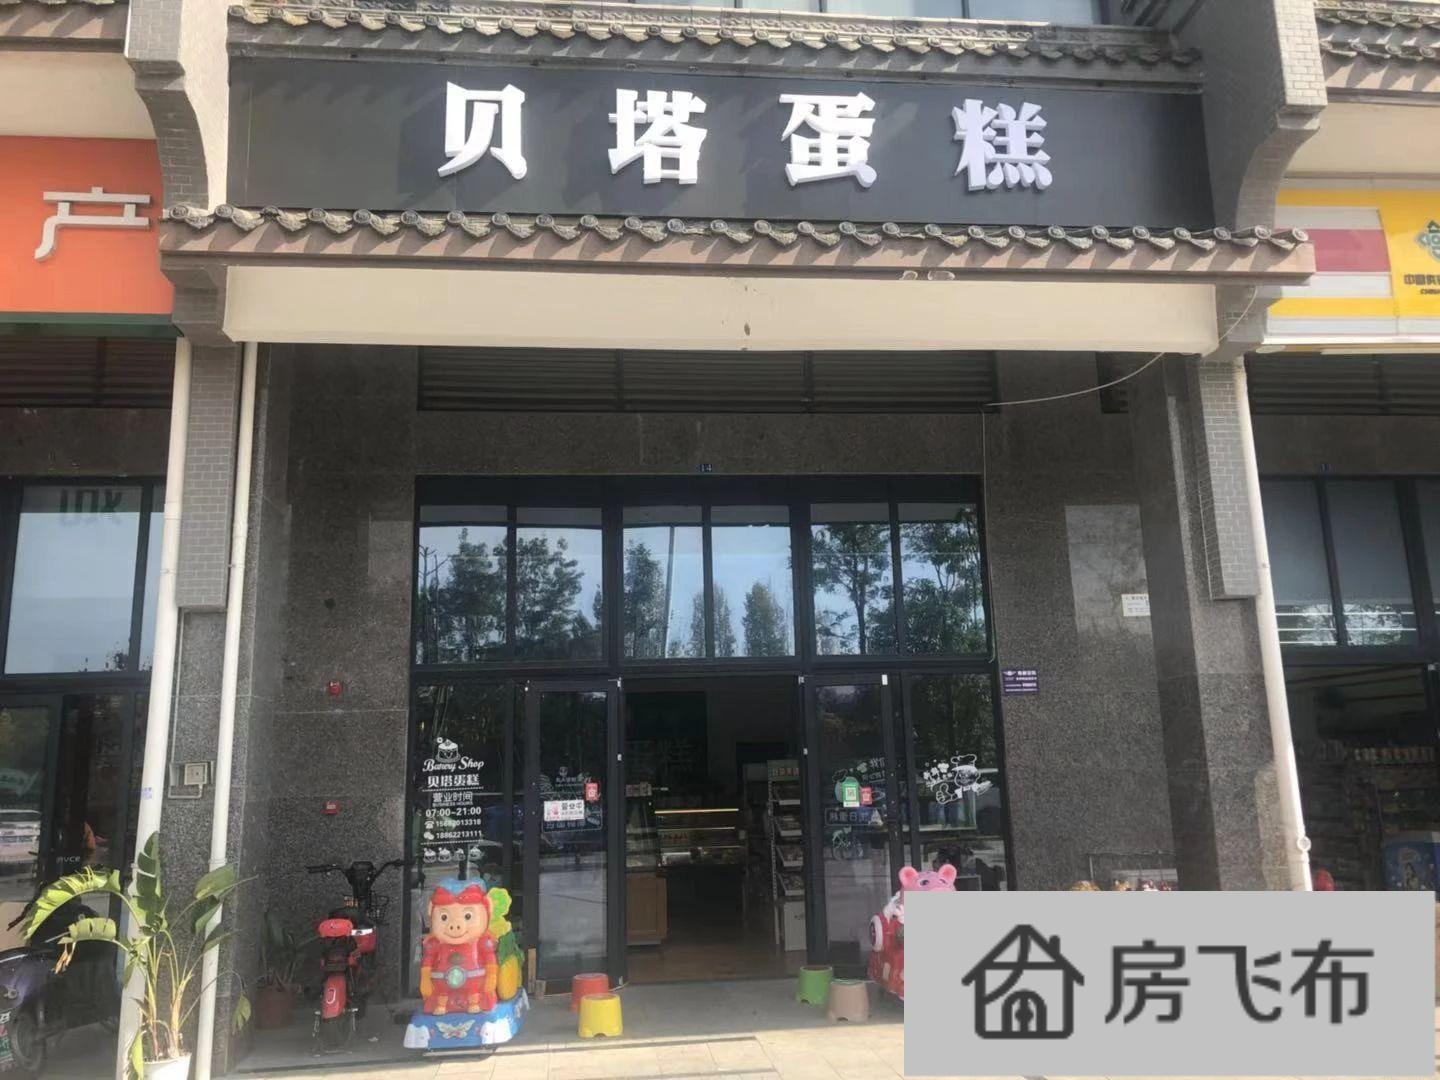 (出售) 郫县万达 地铁口临街全业态餐饮旺铺 年租4.5万